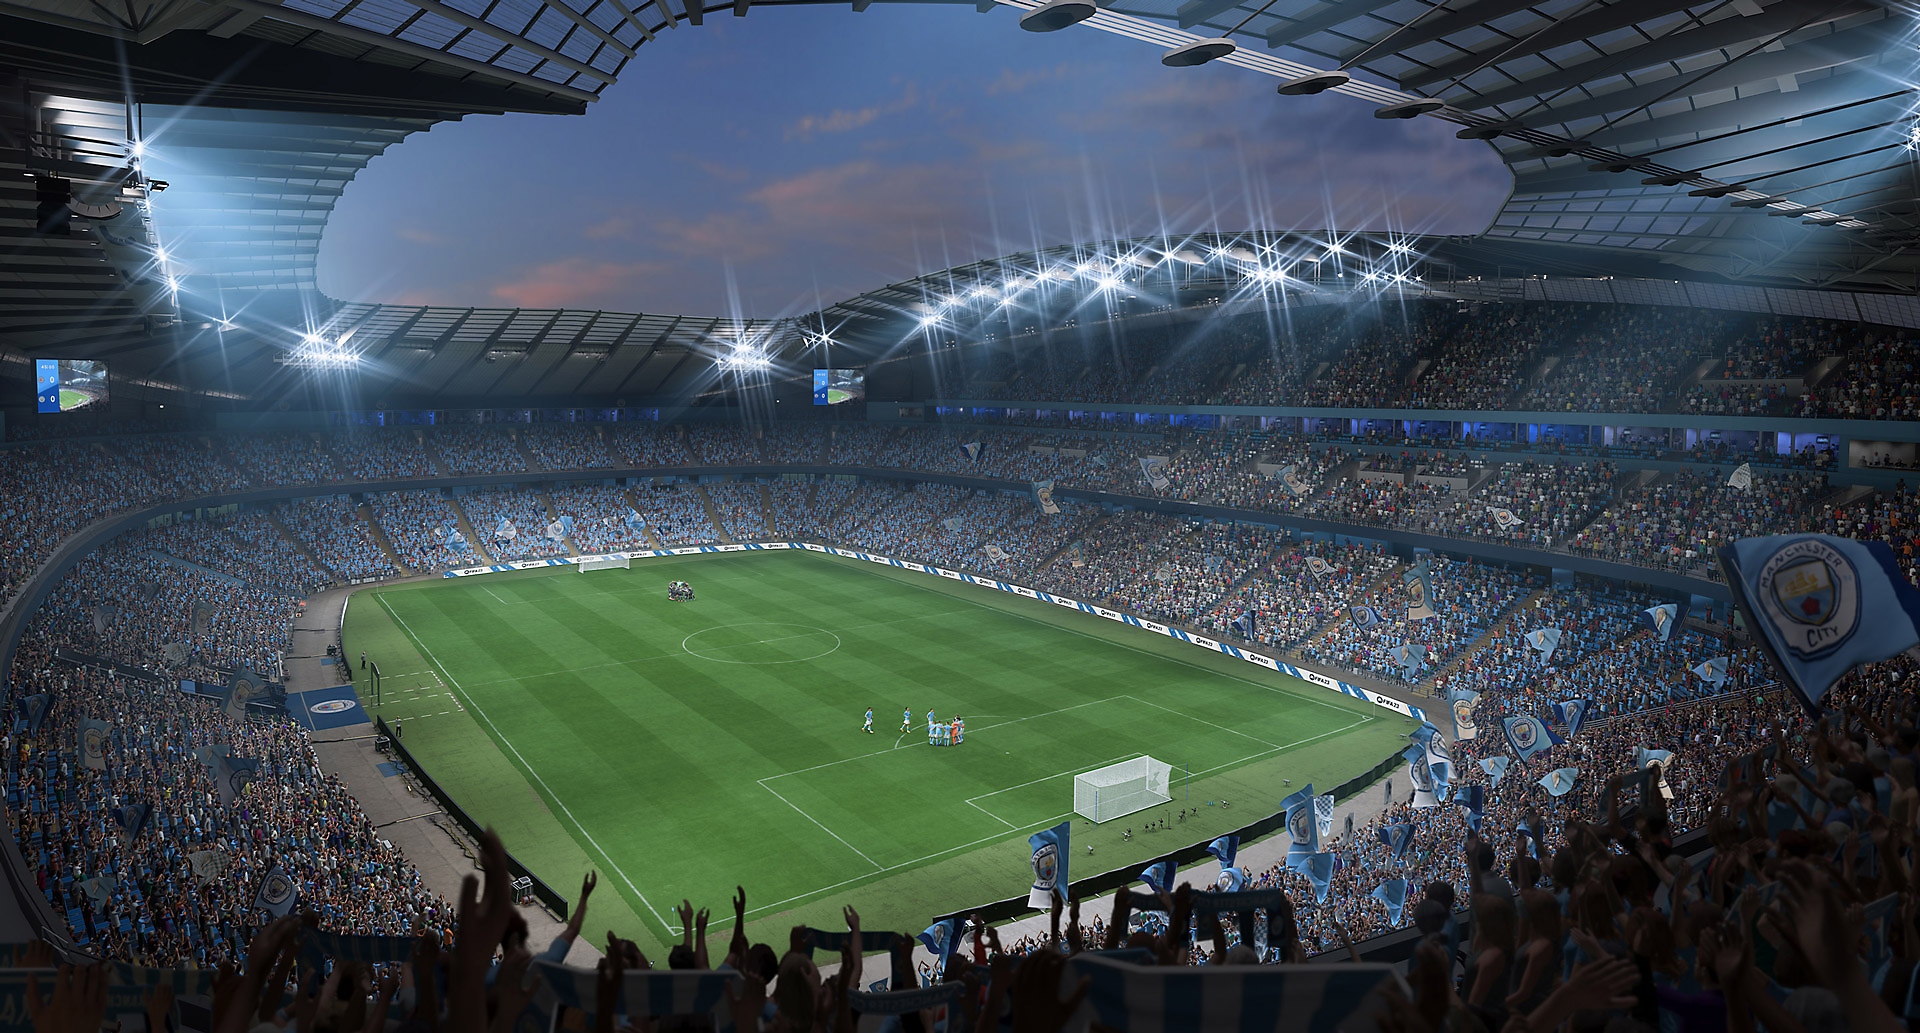 EA Sports FIFA 23 – videoposnetek s prikazom štadiona in navijačev, ki spodbujajo ekipe.